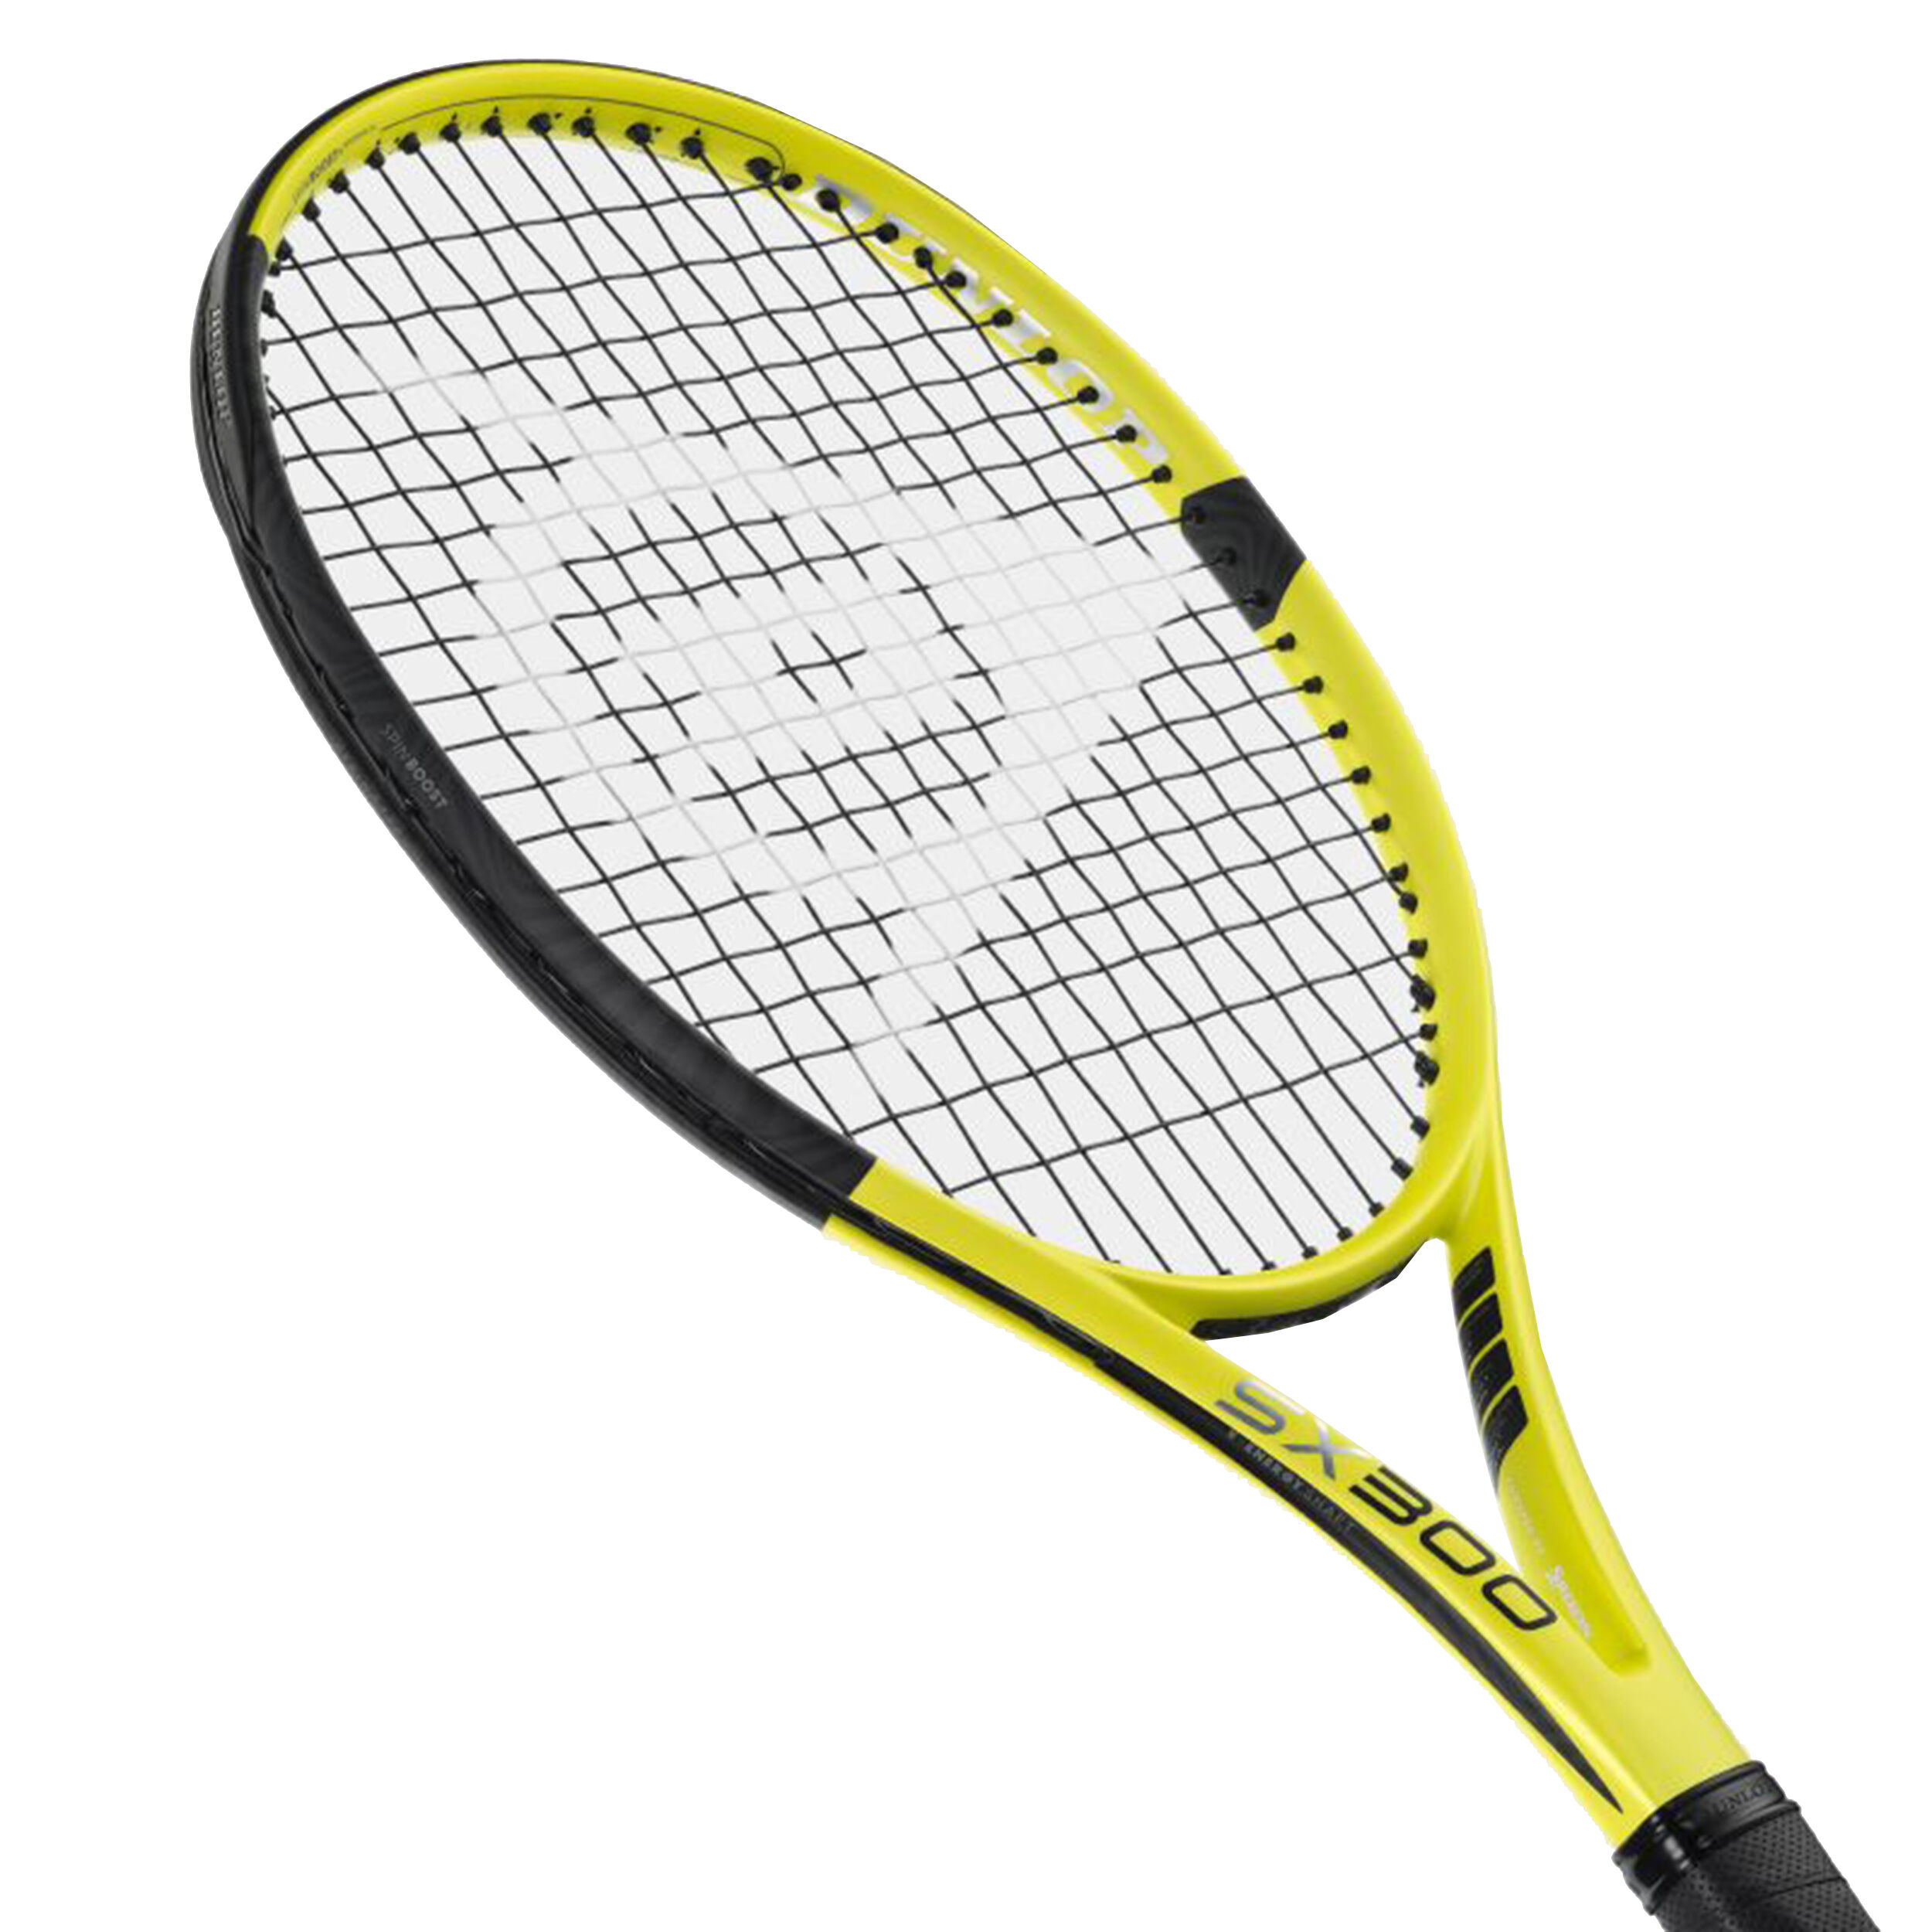 Buy Dunlop SX 300 online | Tennis Point COM